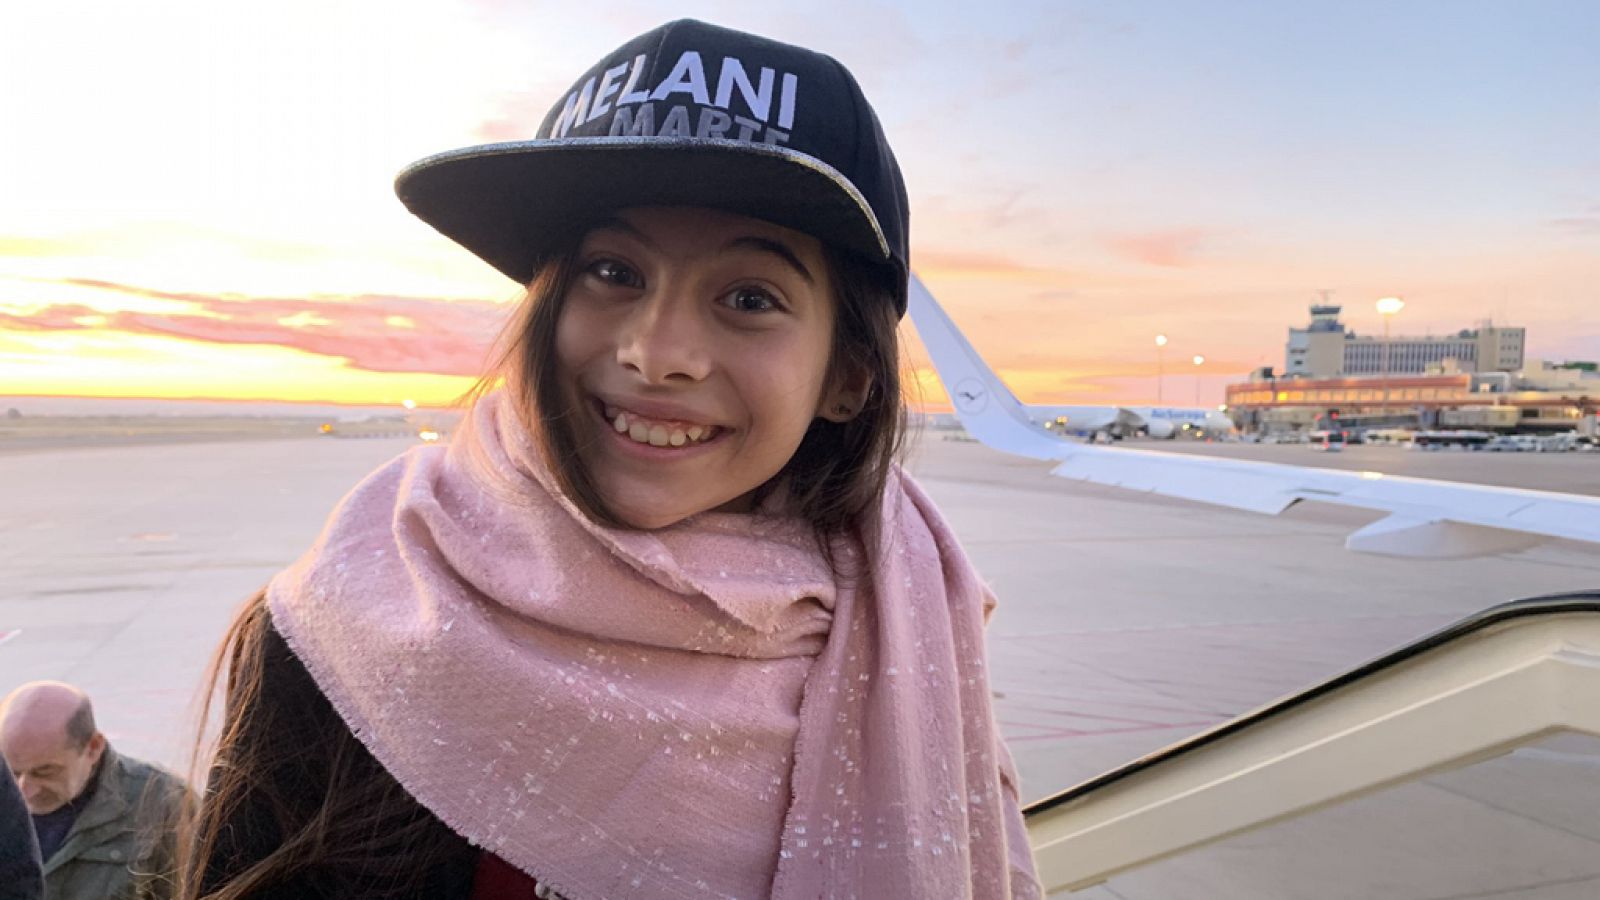 Melani, resumen de un sueño a punto de cumplirse en Eurovisión Junior